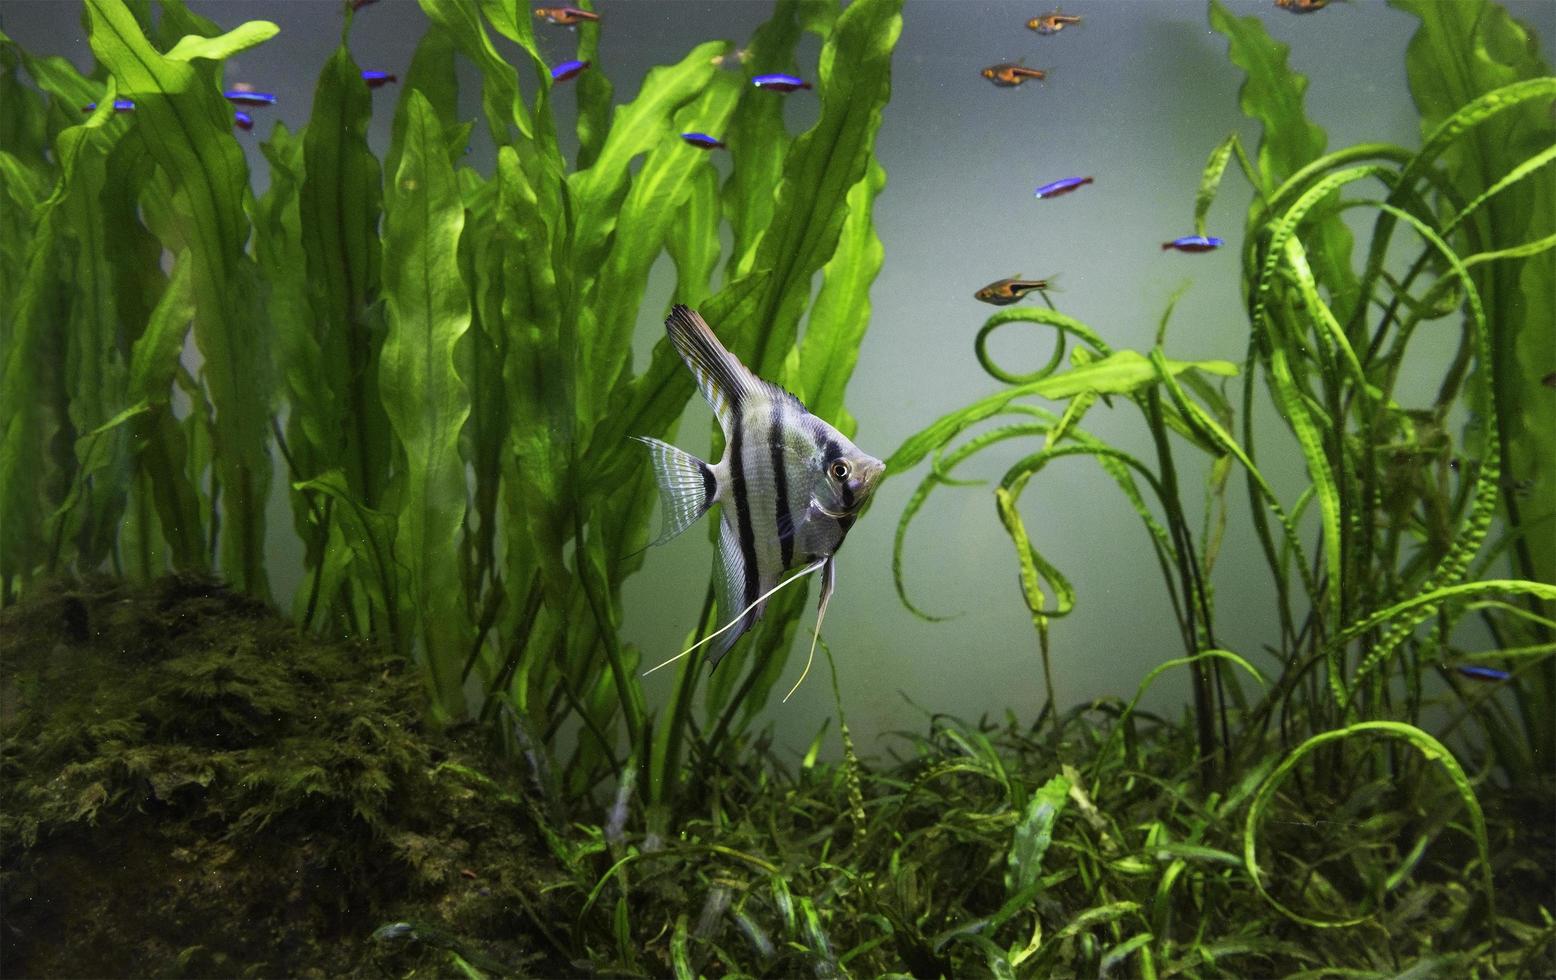 planted aquarium tank with fish photo